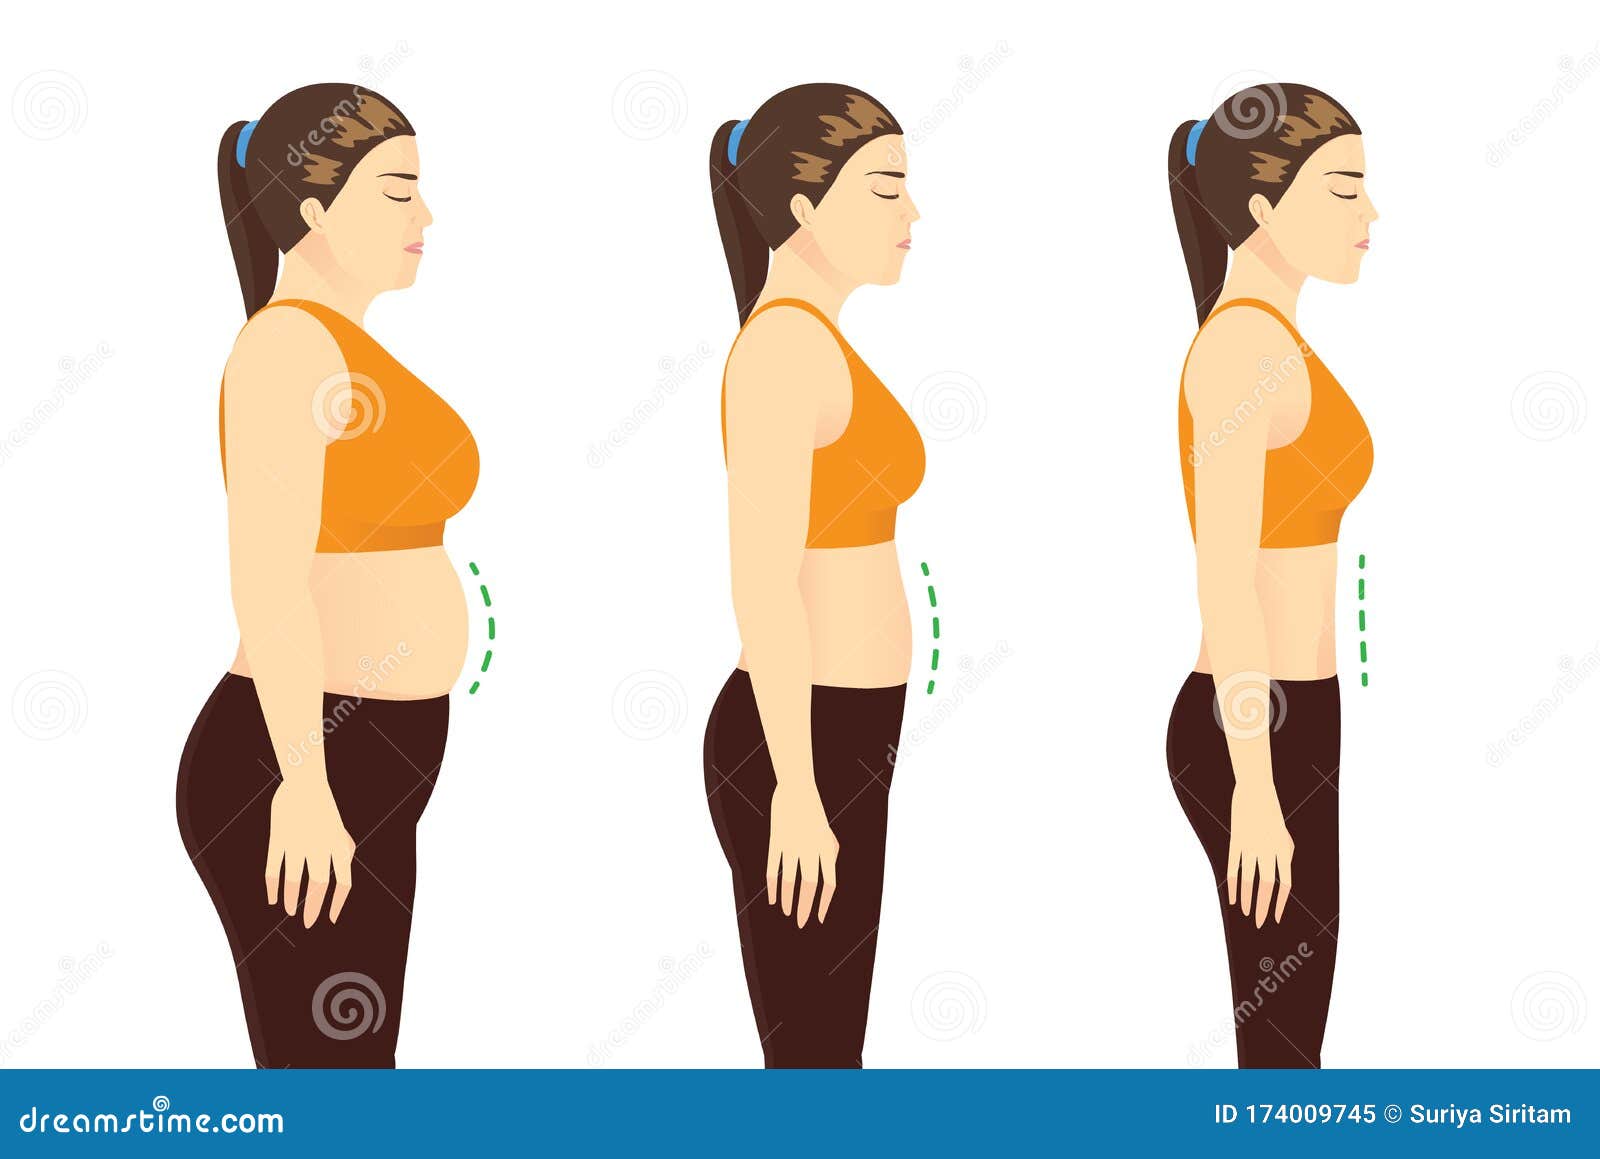 fat woman in sportswear to get a flatter belly in 3 step.